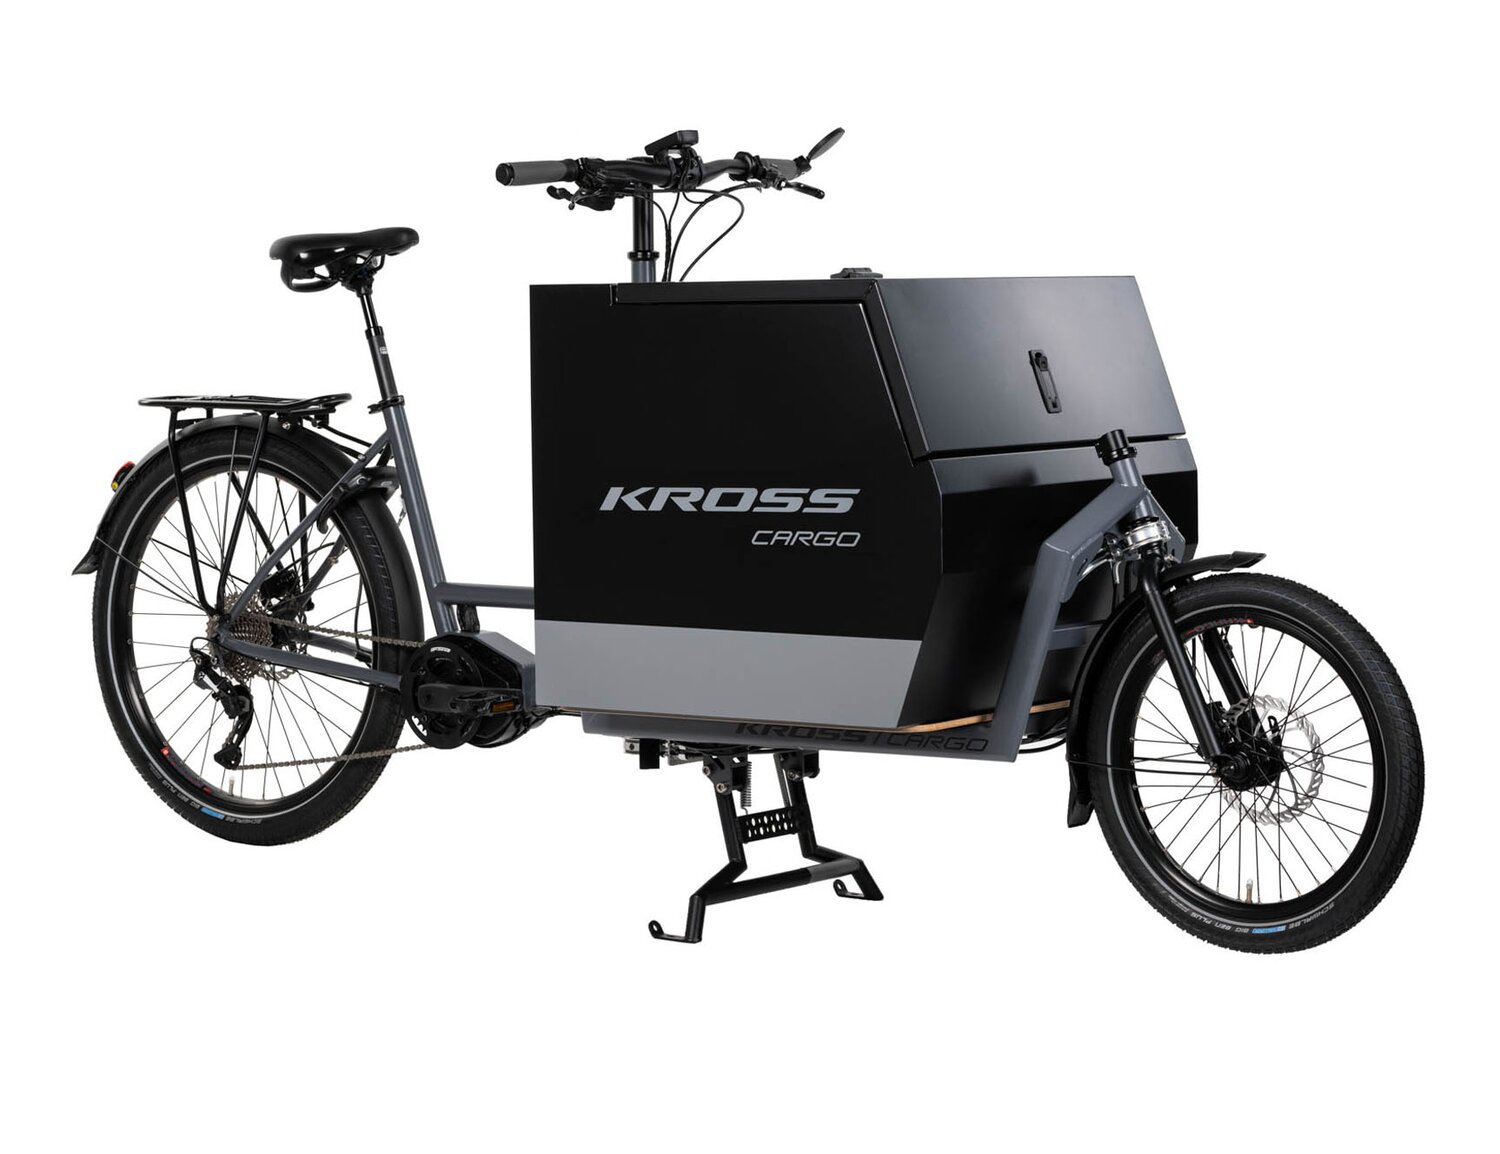  Elektryczny rower cargo Ebike KROSS E-Cargo 1.0 Business na stalowej ramie w kolorze szarym wyposażony w osprzęt Shimano oraz elektryczny napęd Oli 